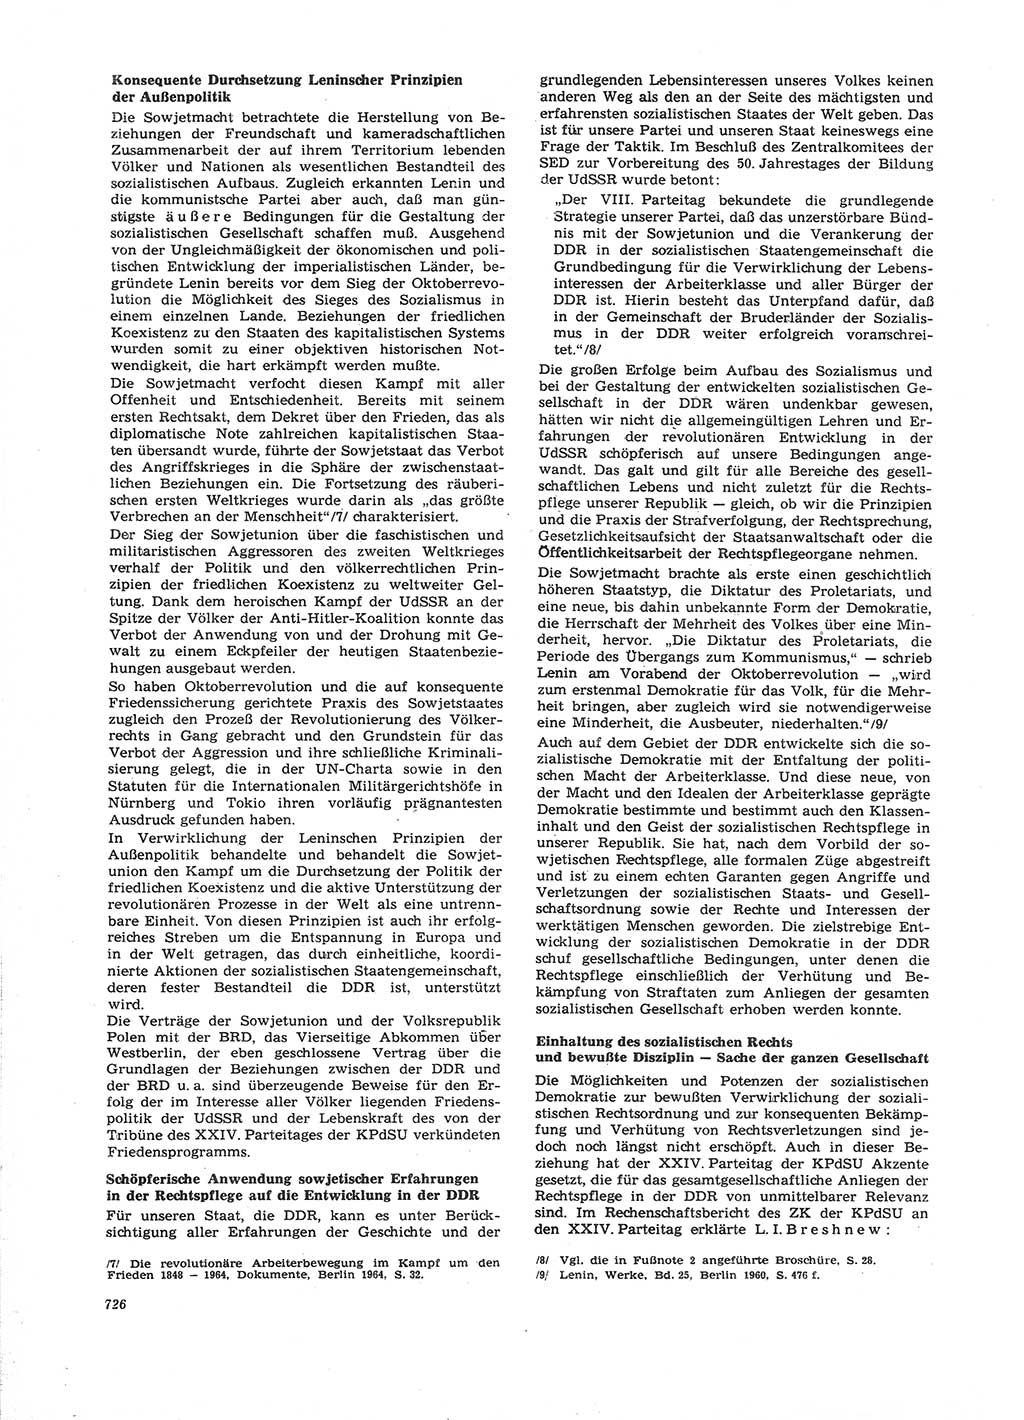 Neue Justiz (NJ), Zeitschrift für Recht und Rechtswissenschaft [Deutsche Demokratische Republik (DDR)], 26. Jahrgang 1972, Seite 726 (NJ DDR 1972, S. 726)